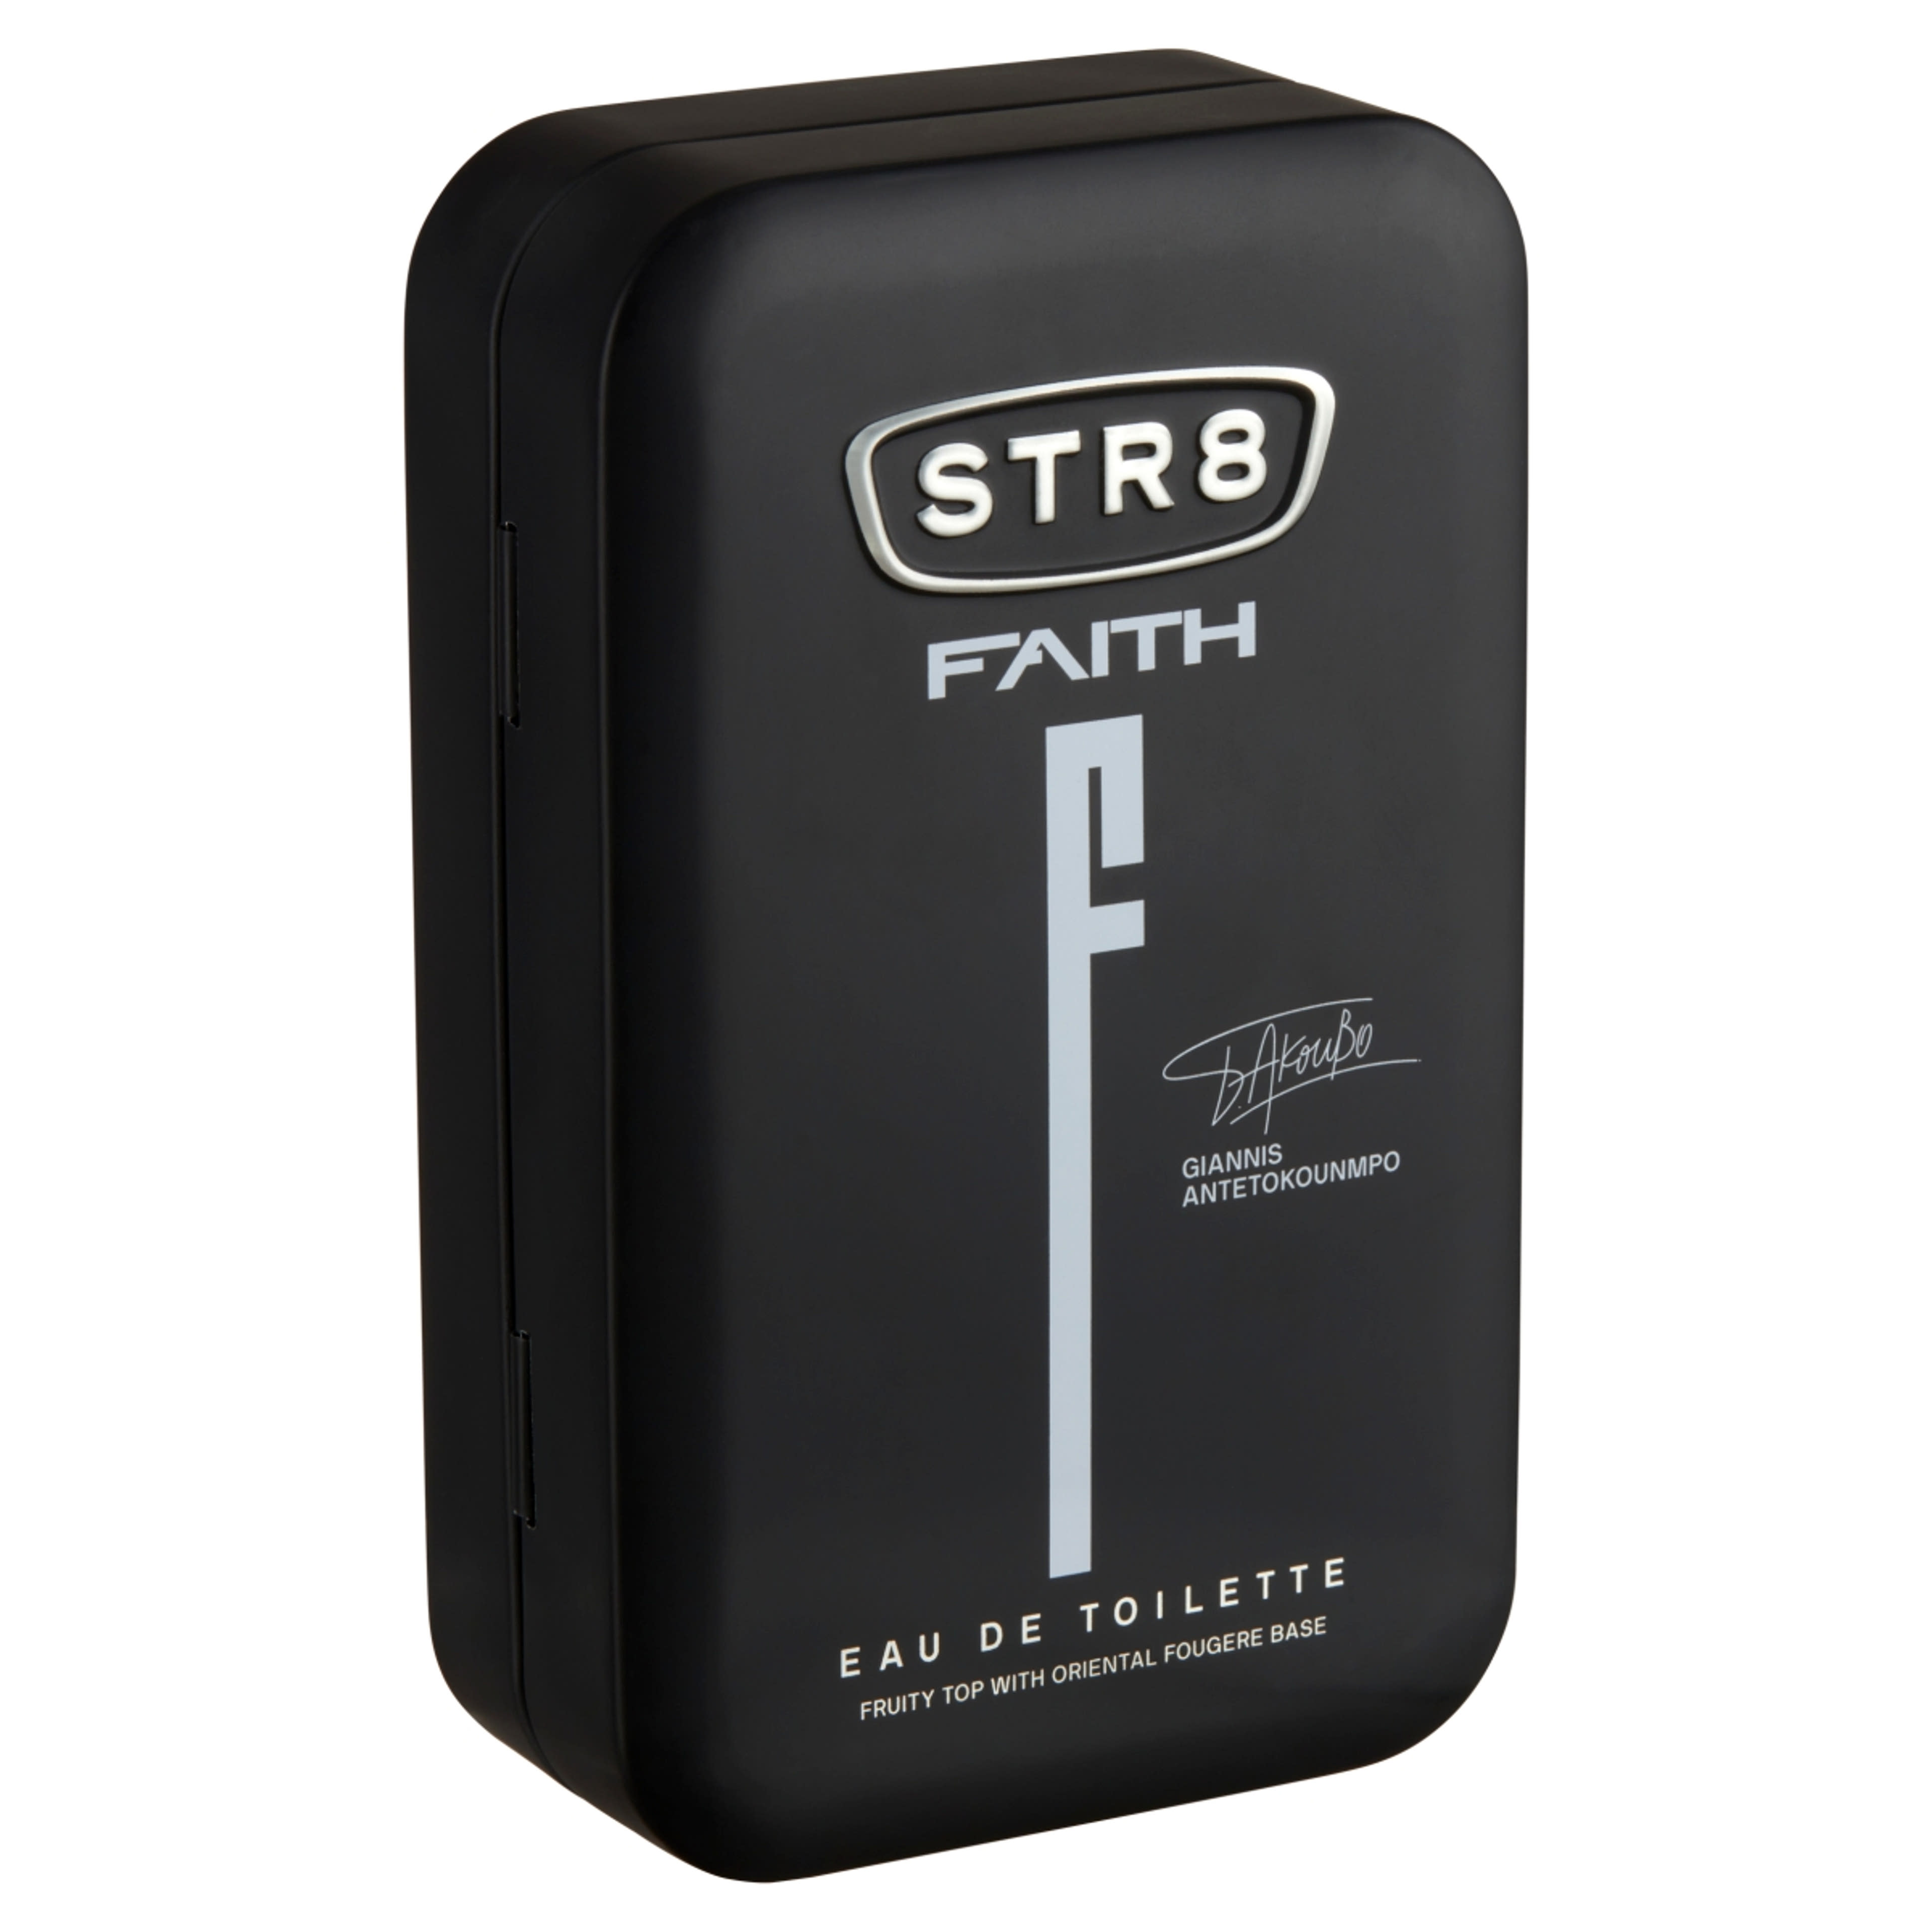 STR8 Faith férfi eau de toilette - 50 ml-3